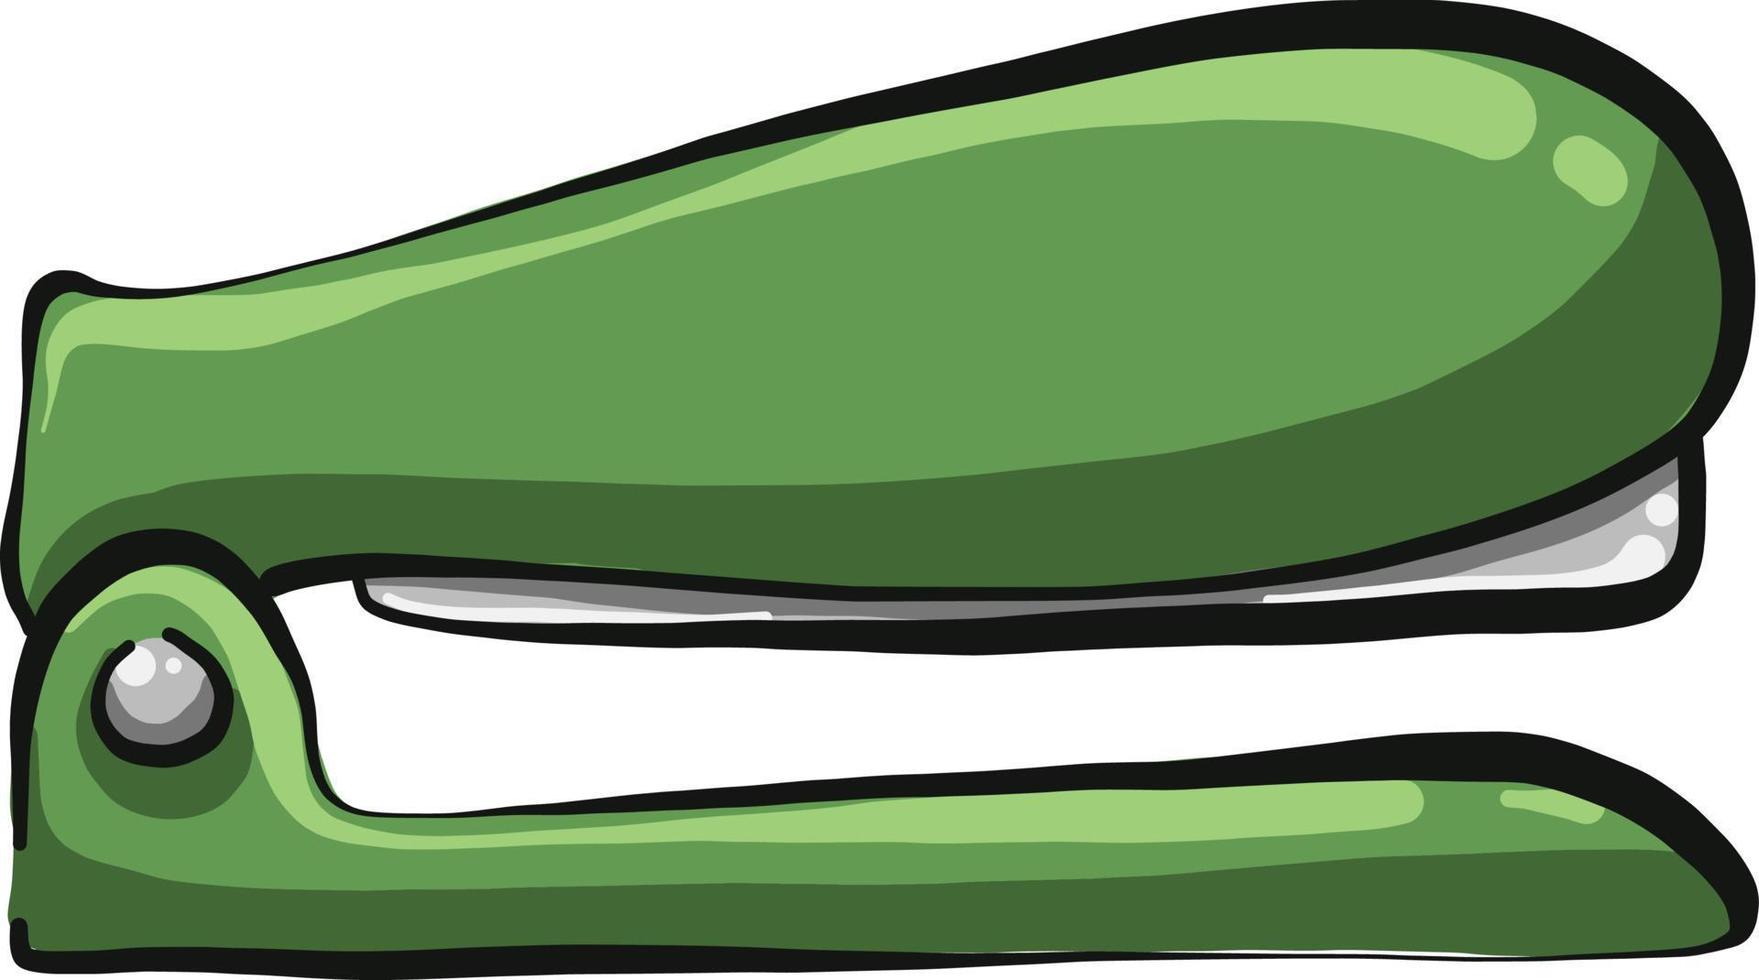 Grapadora verde, ilustración, vector sobre fondo blanco.